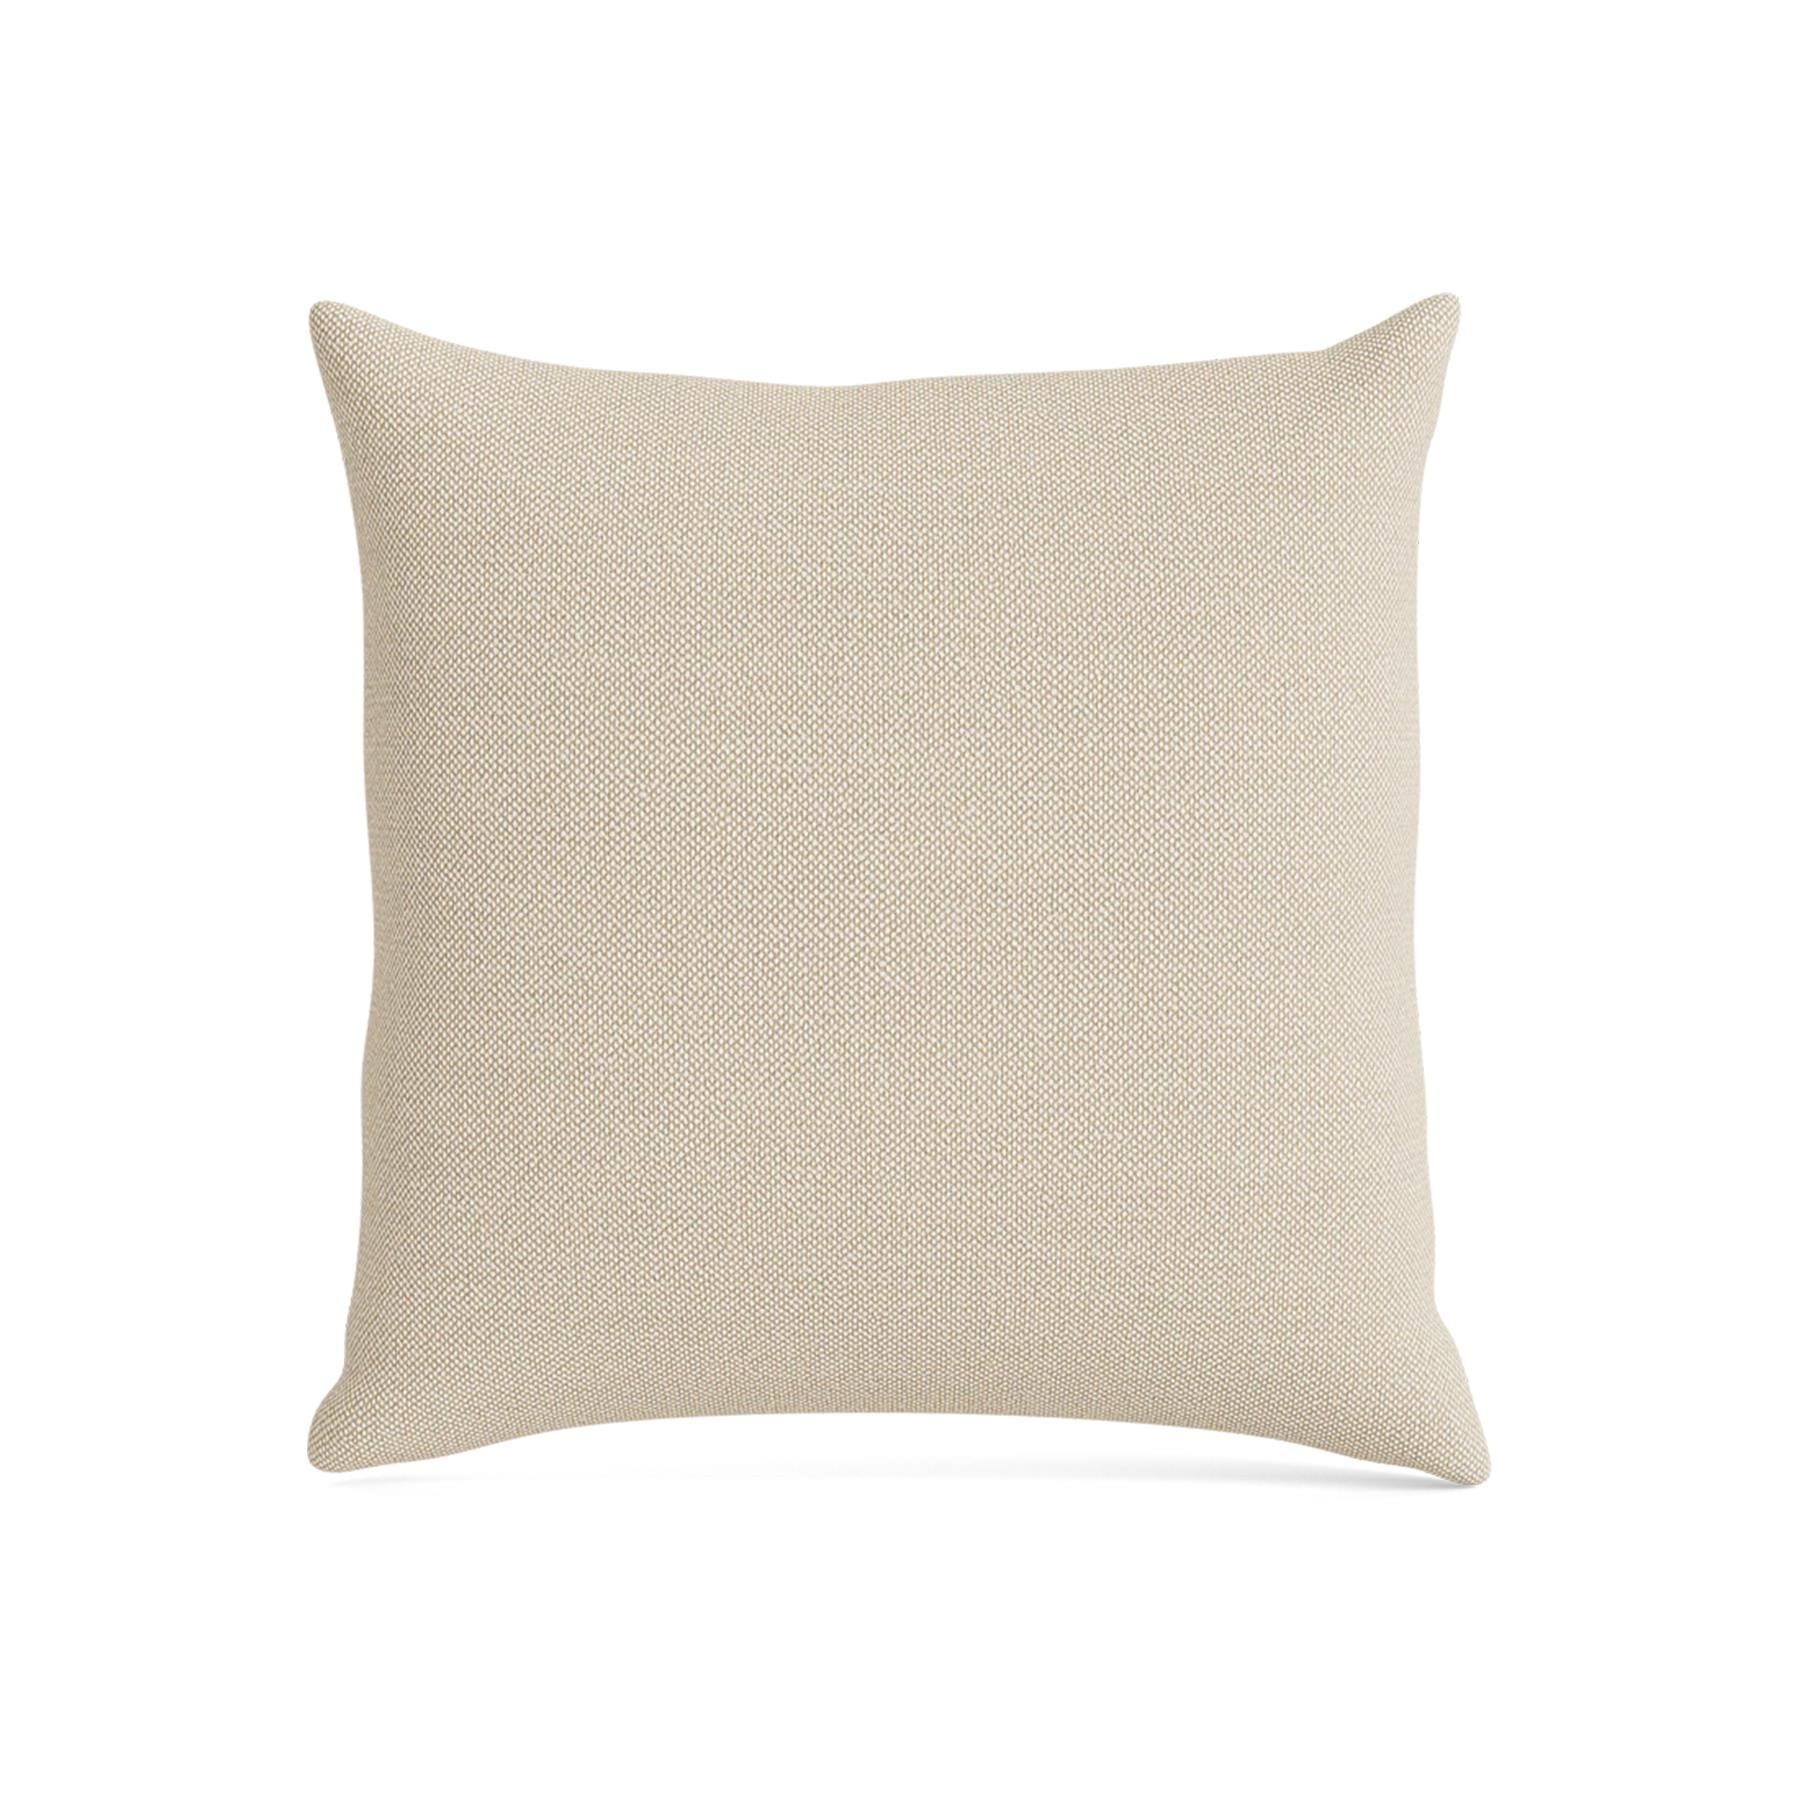 Make Nordic Pillow 50cmx50cm Hallingdal 200 Down And Fibers Cream